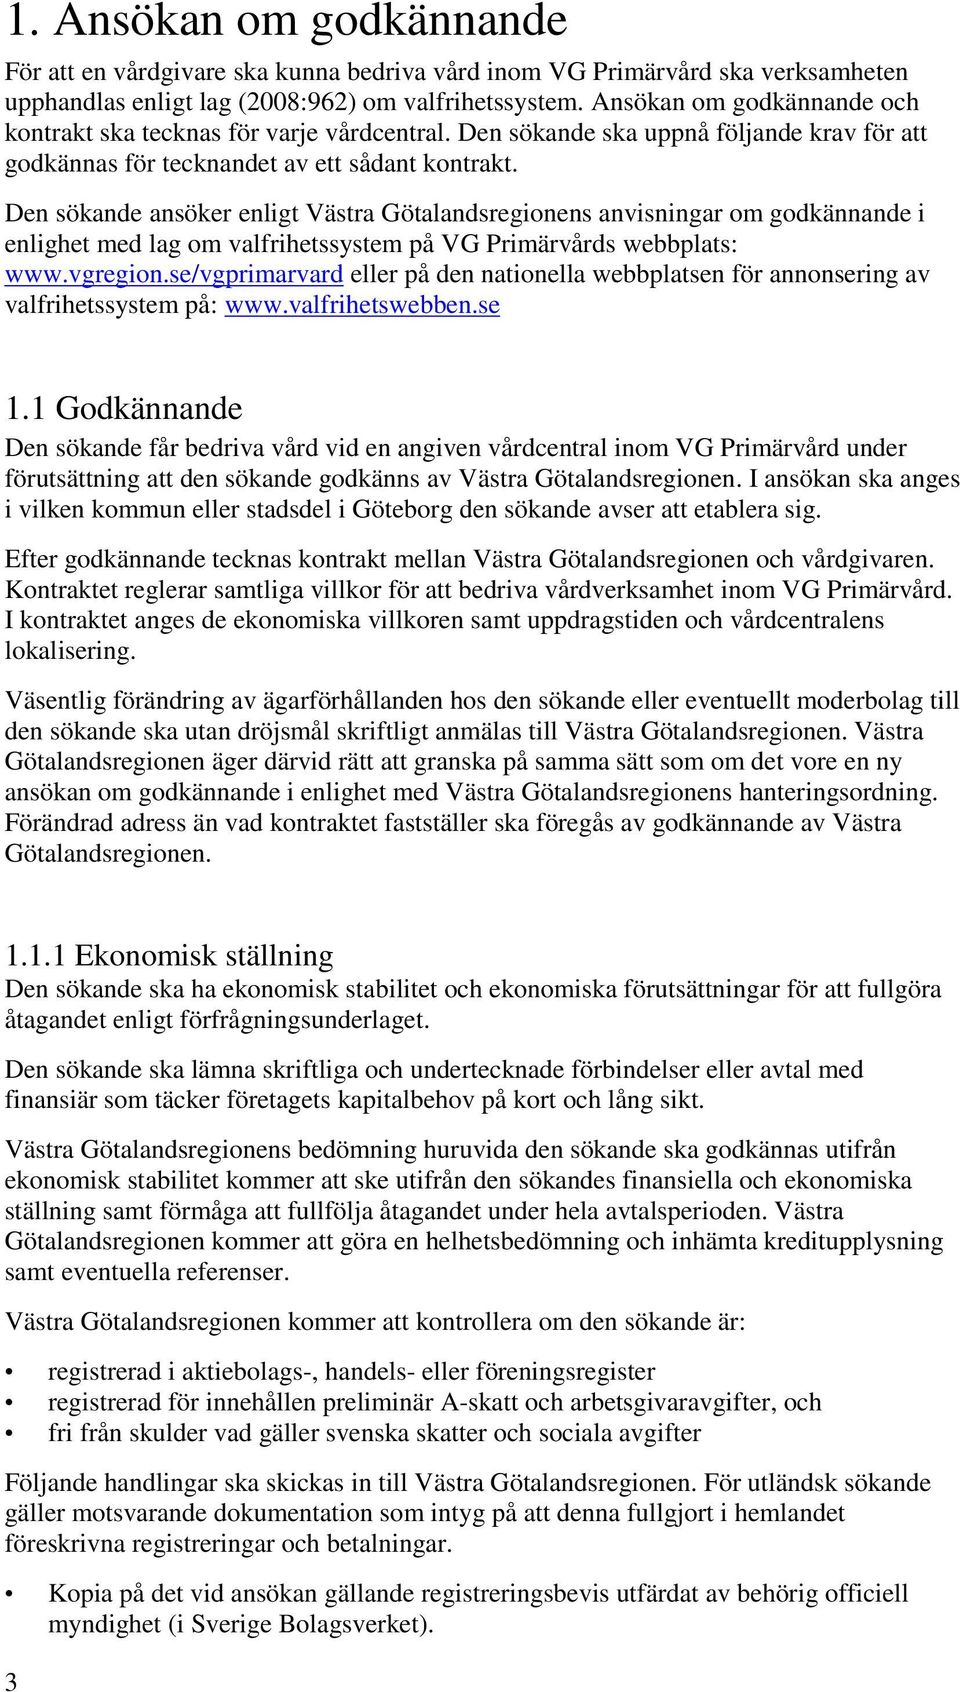 Den sökande ansöker enligt Västra Götalandsregionens anvisningar om godkännande i enlighet med lag om valfrihetssystem på VG Primärvårds webbplats: www.vgregion.